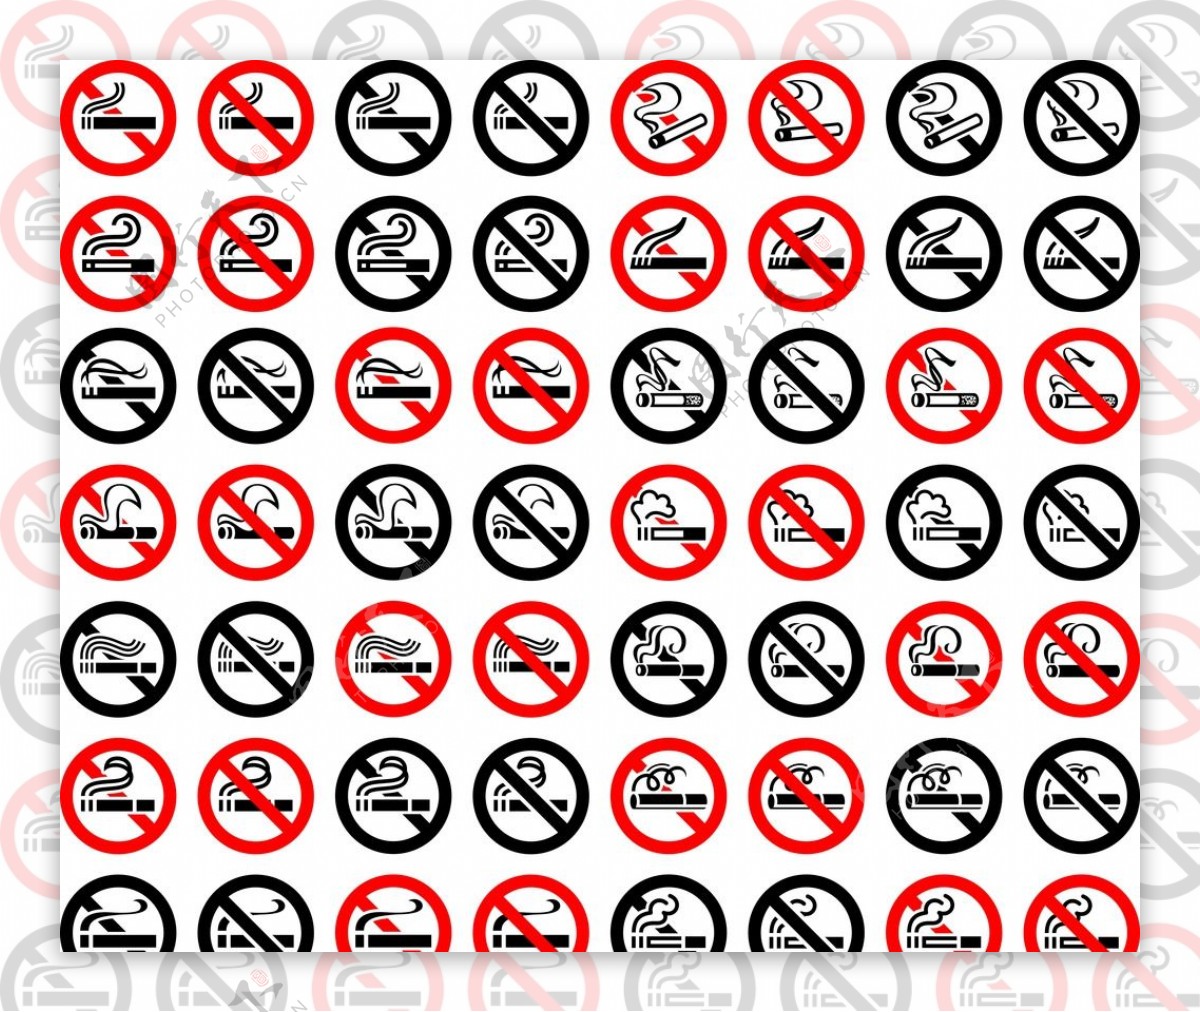 56种禁烟标志